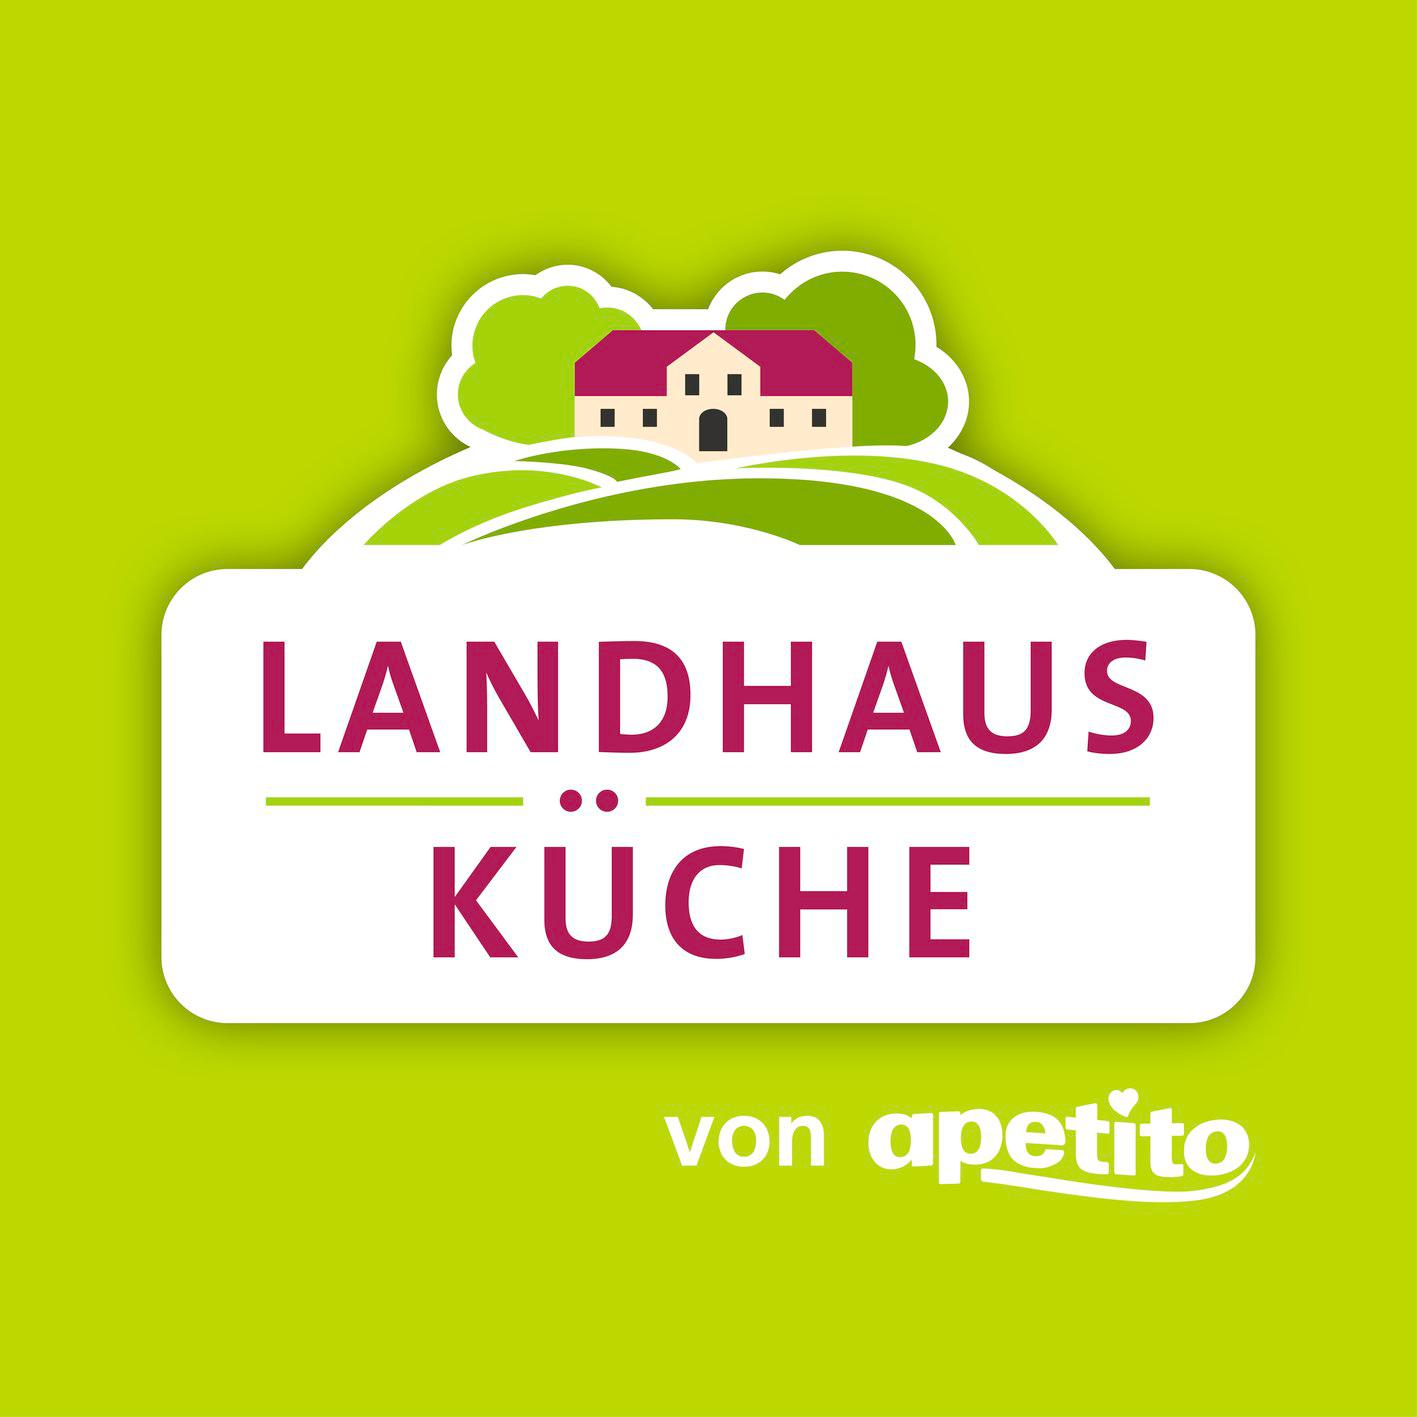 Landhausküche. Essen auf Rädern. Von apetito. in Berlin - Logo